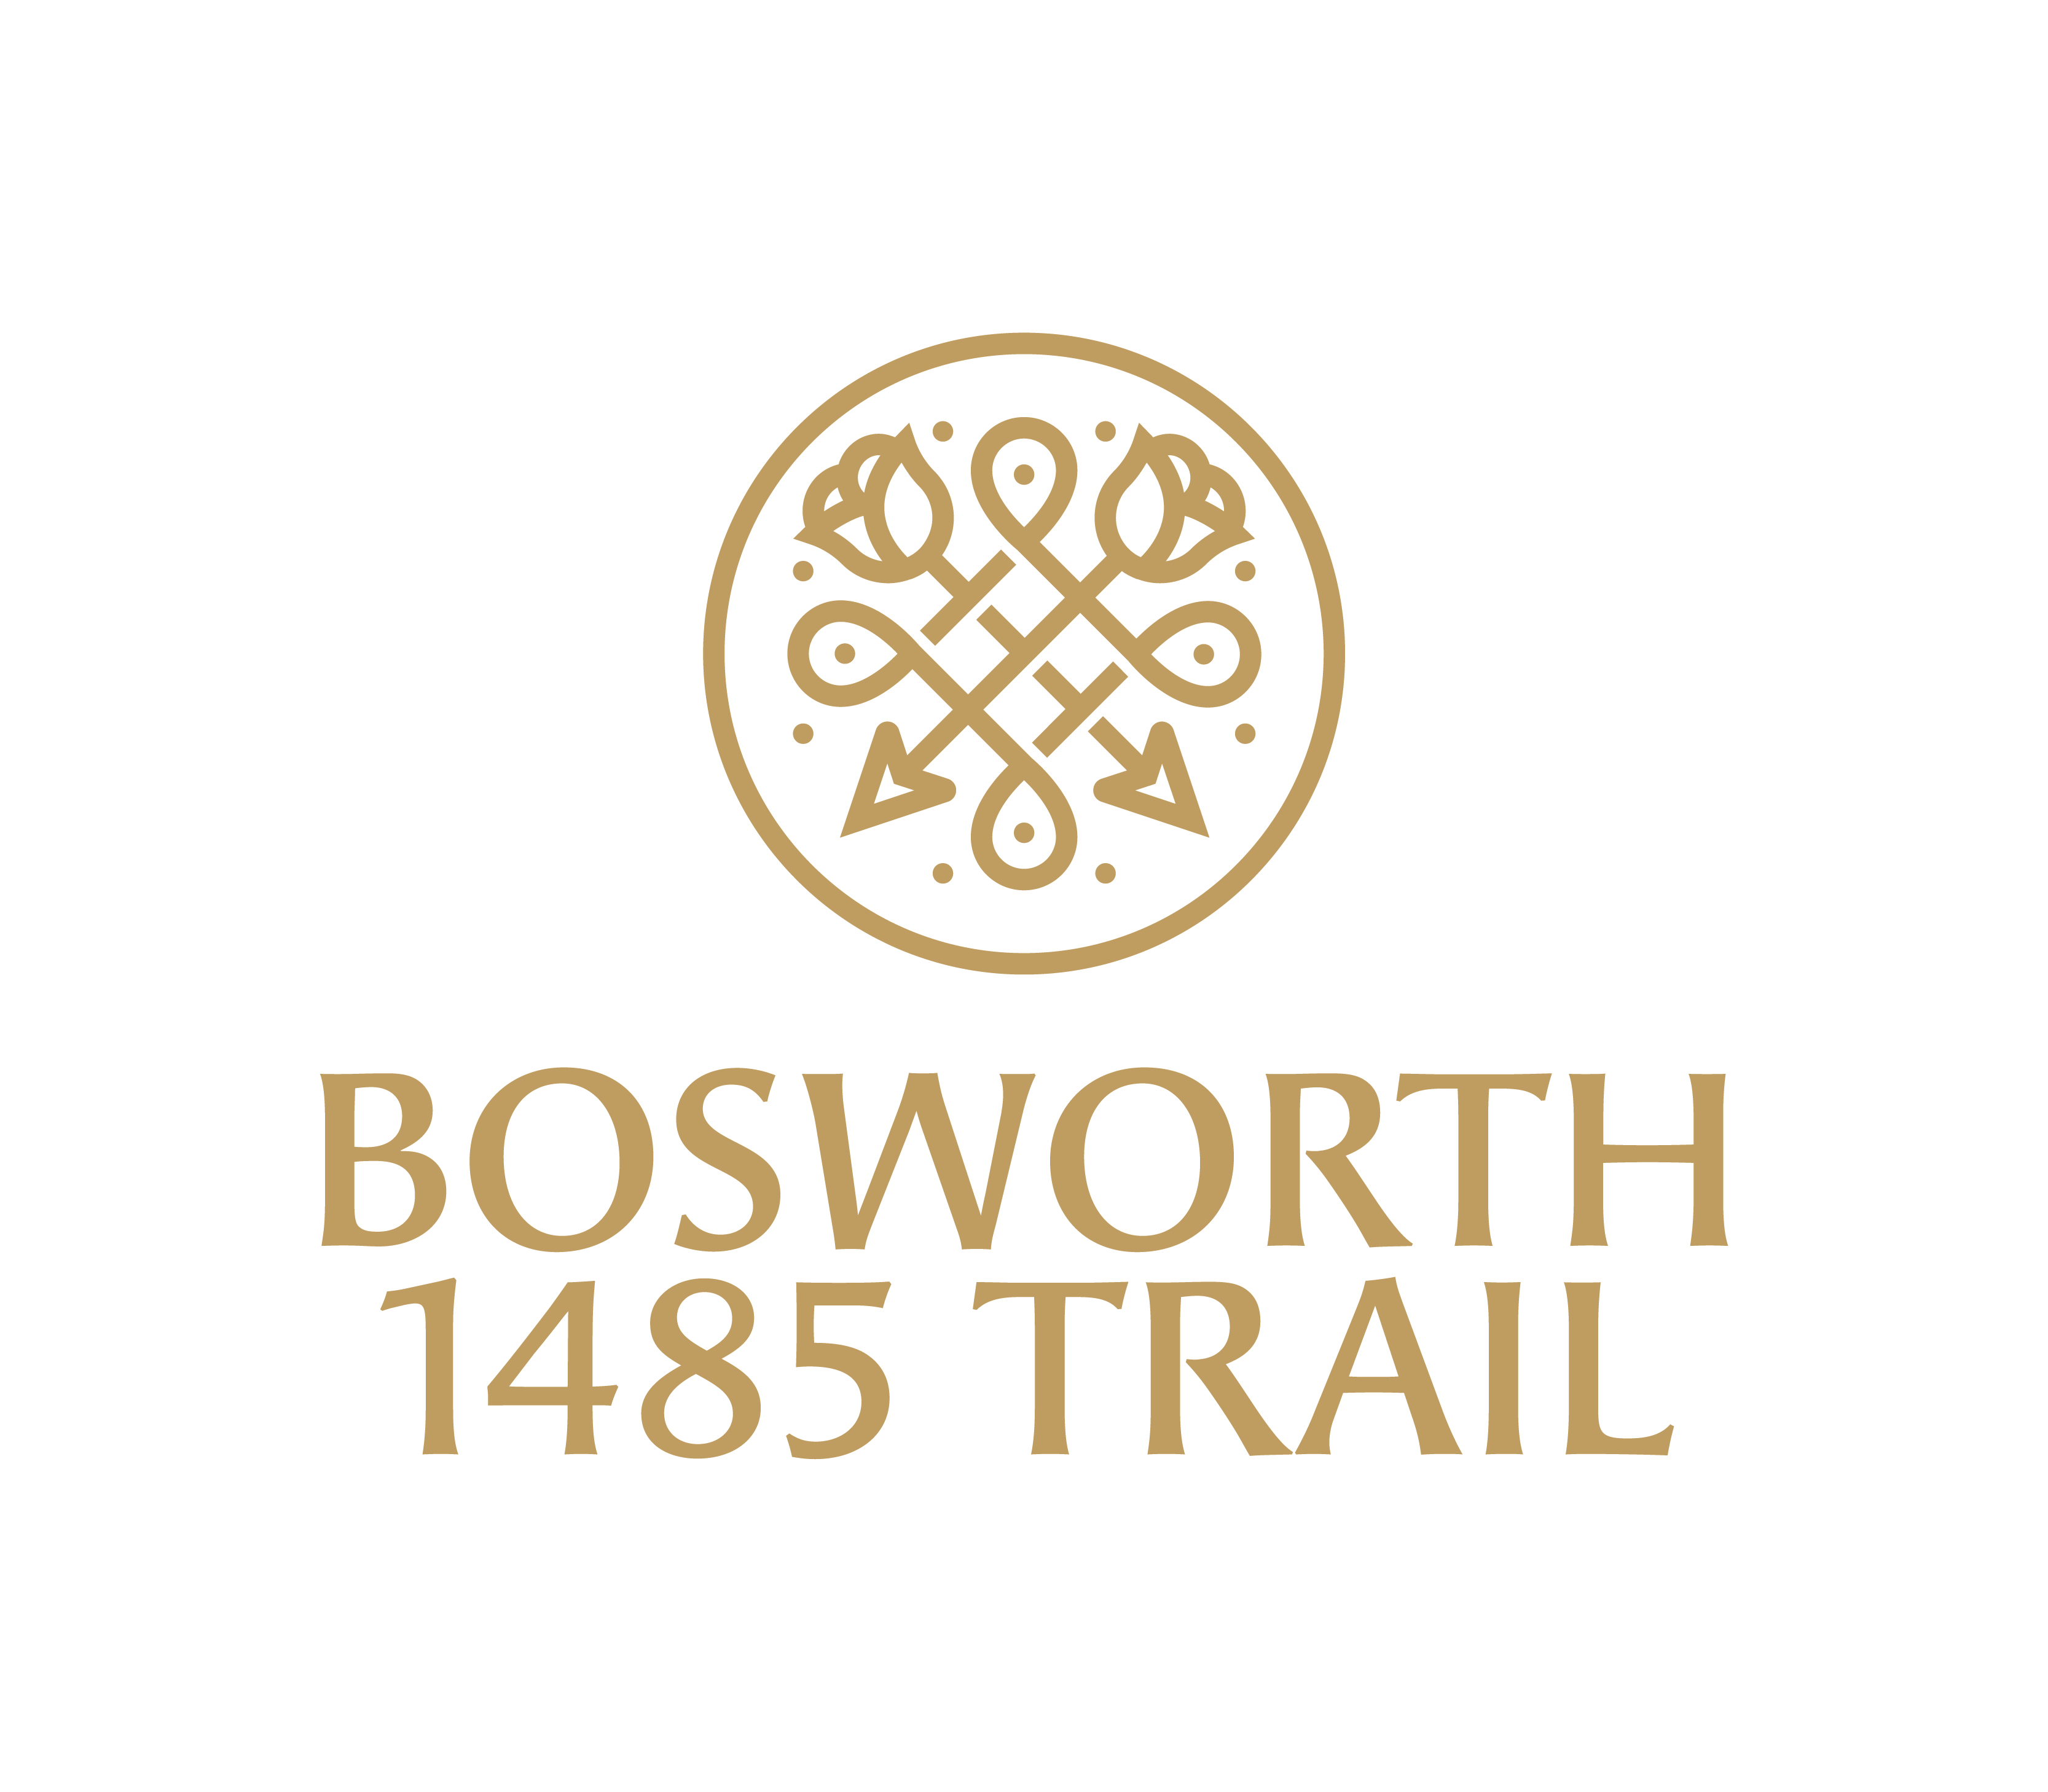 Bosworth1485 Trail